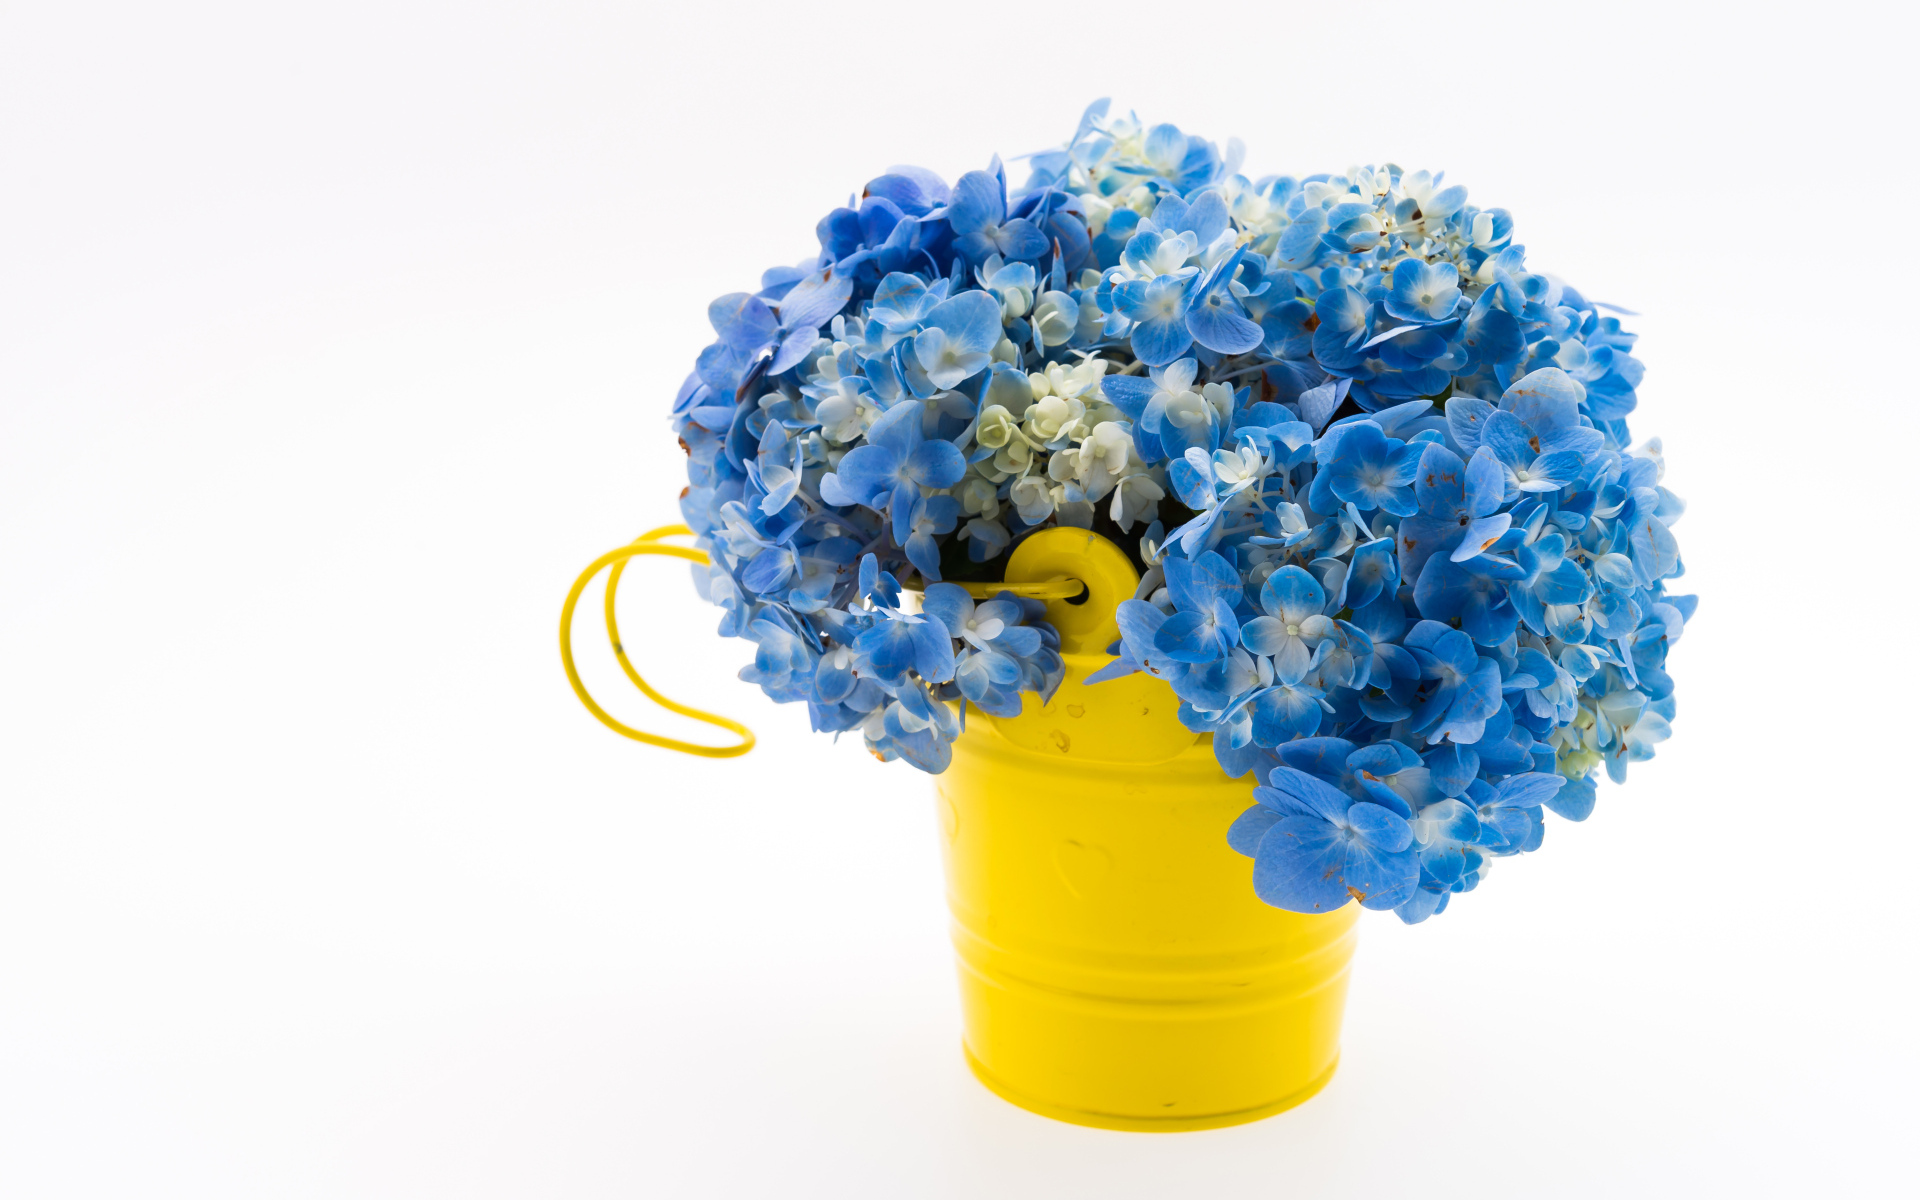 Голубые цветы гортензии в желтом ведре на белом фоне